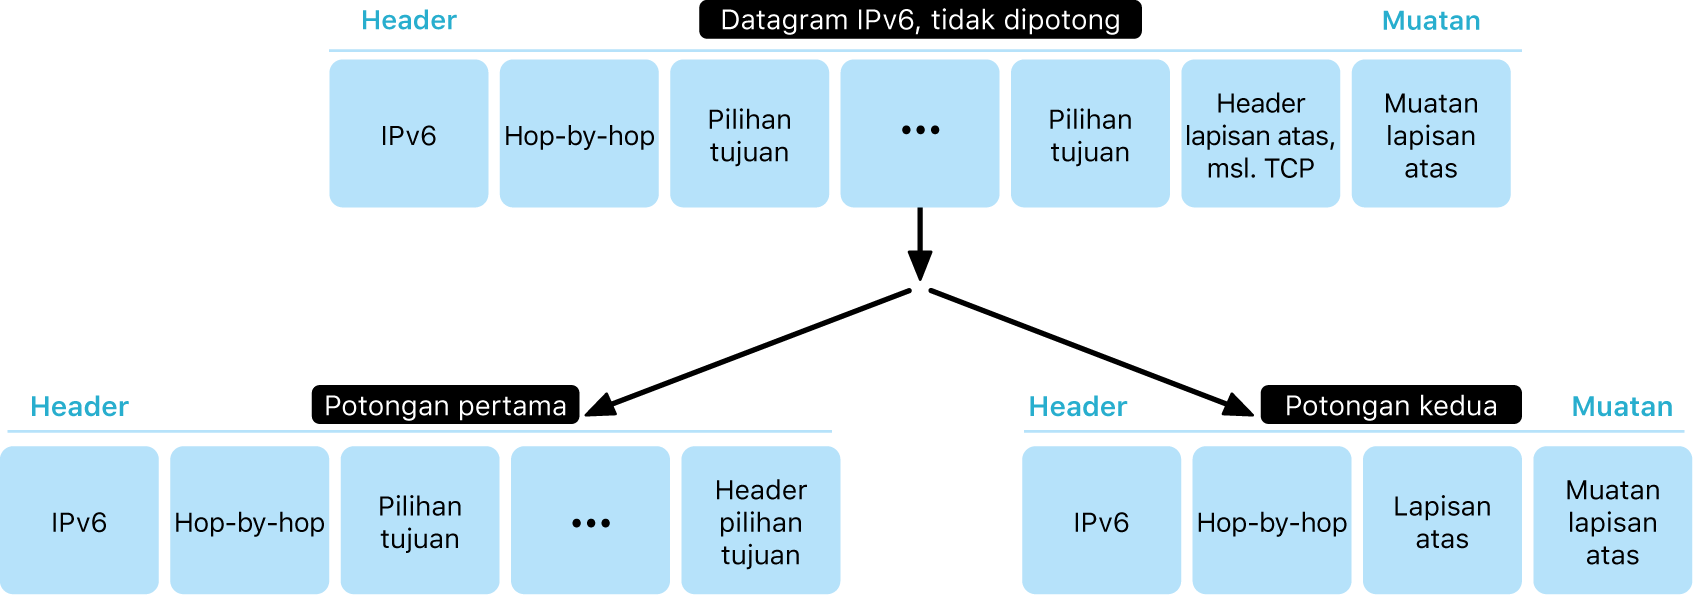 Diagram menampilkan datagram IPv6 dalam dua lapisan: tidak berfragmen dan di bawahnya berfragmen.